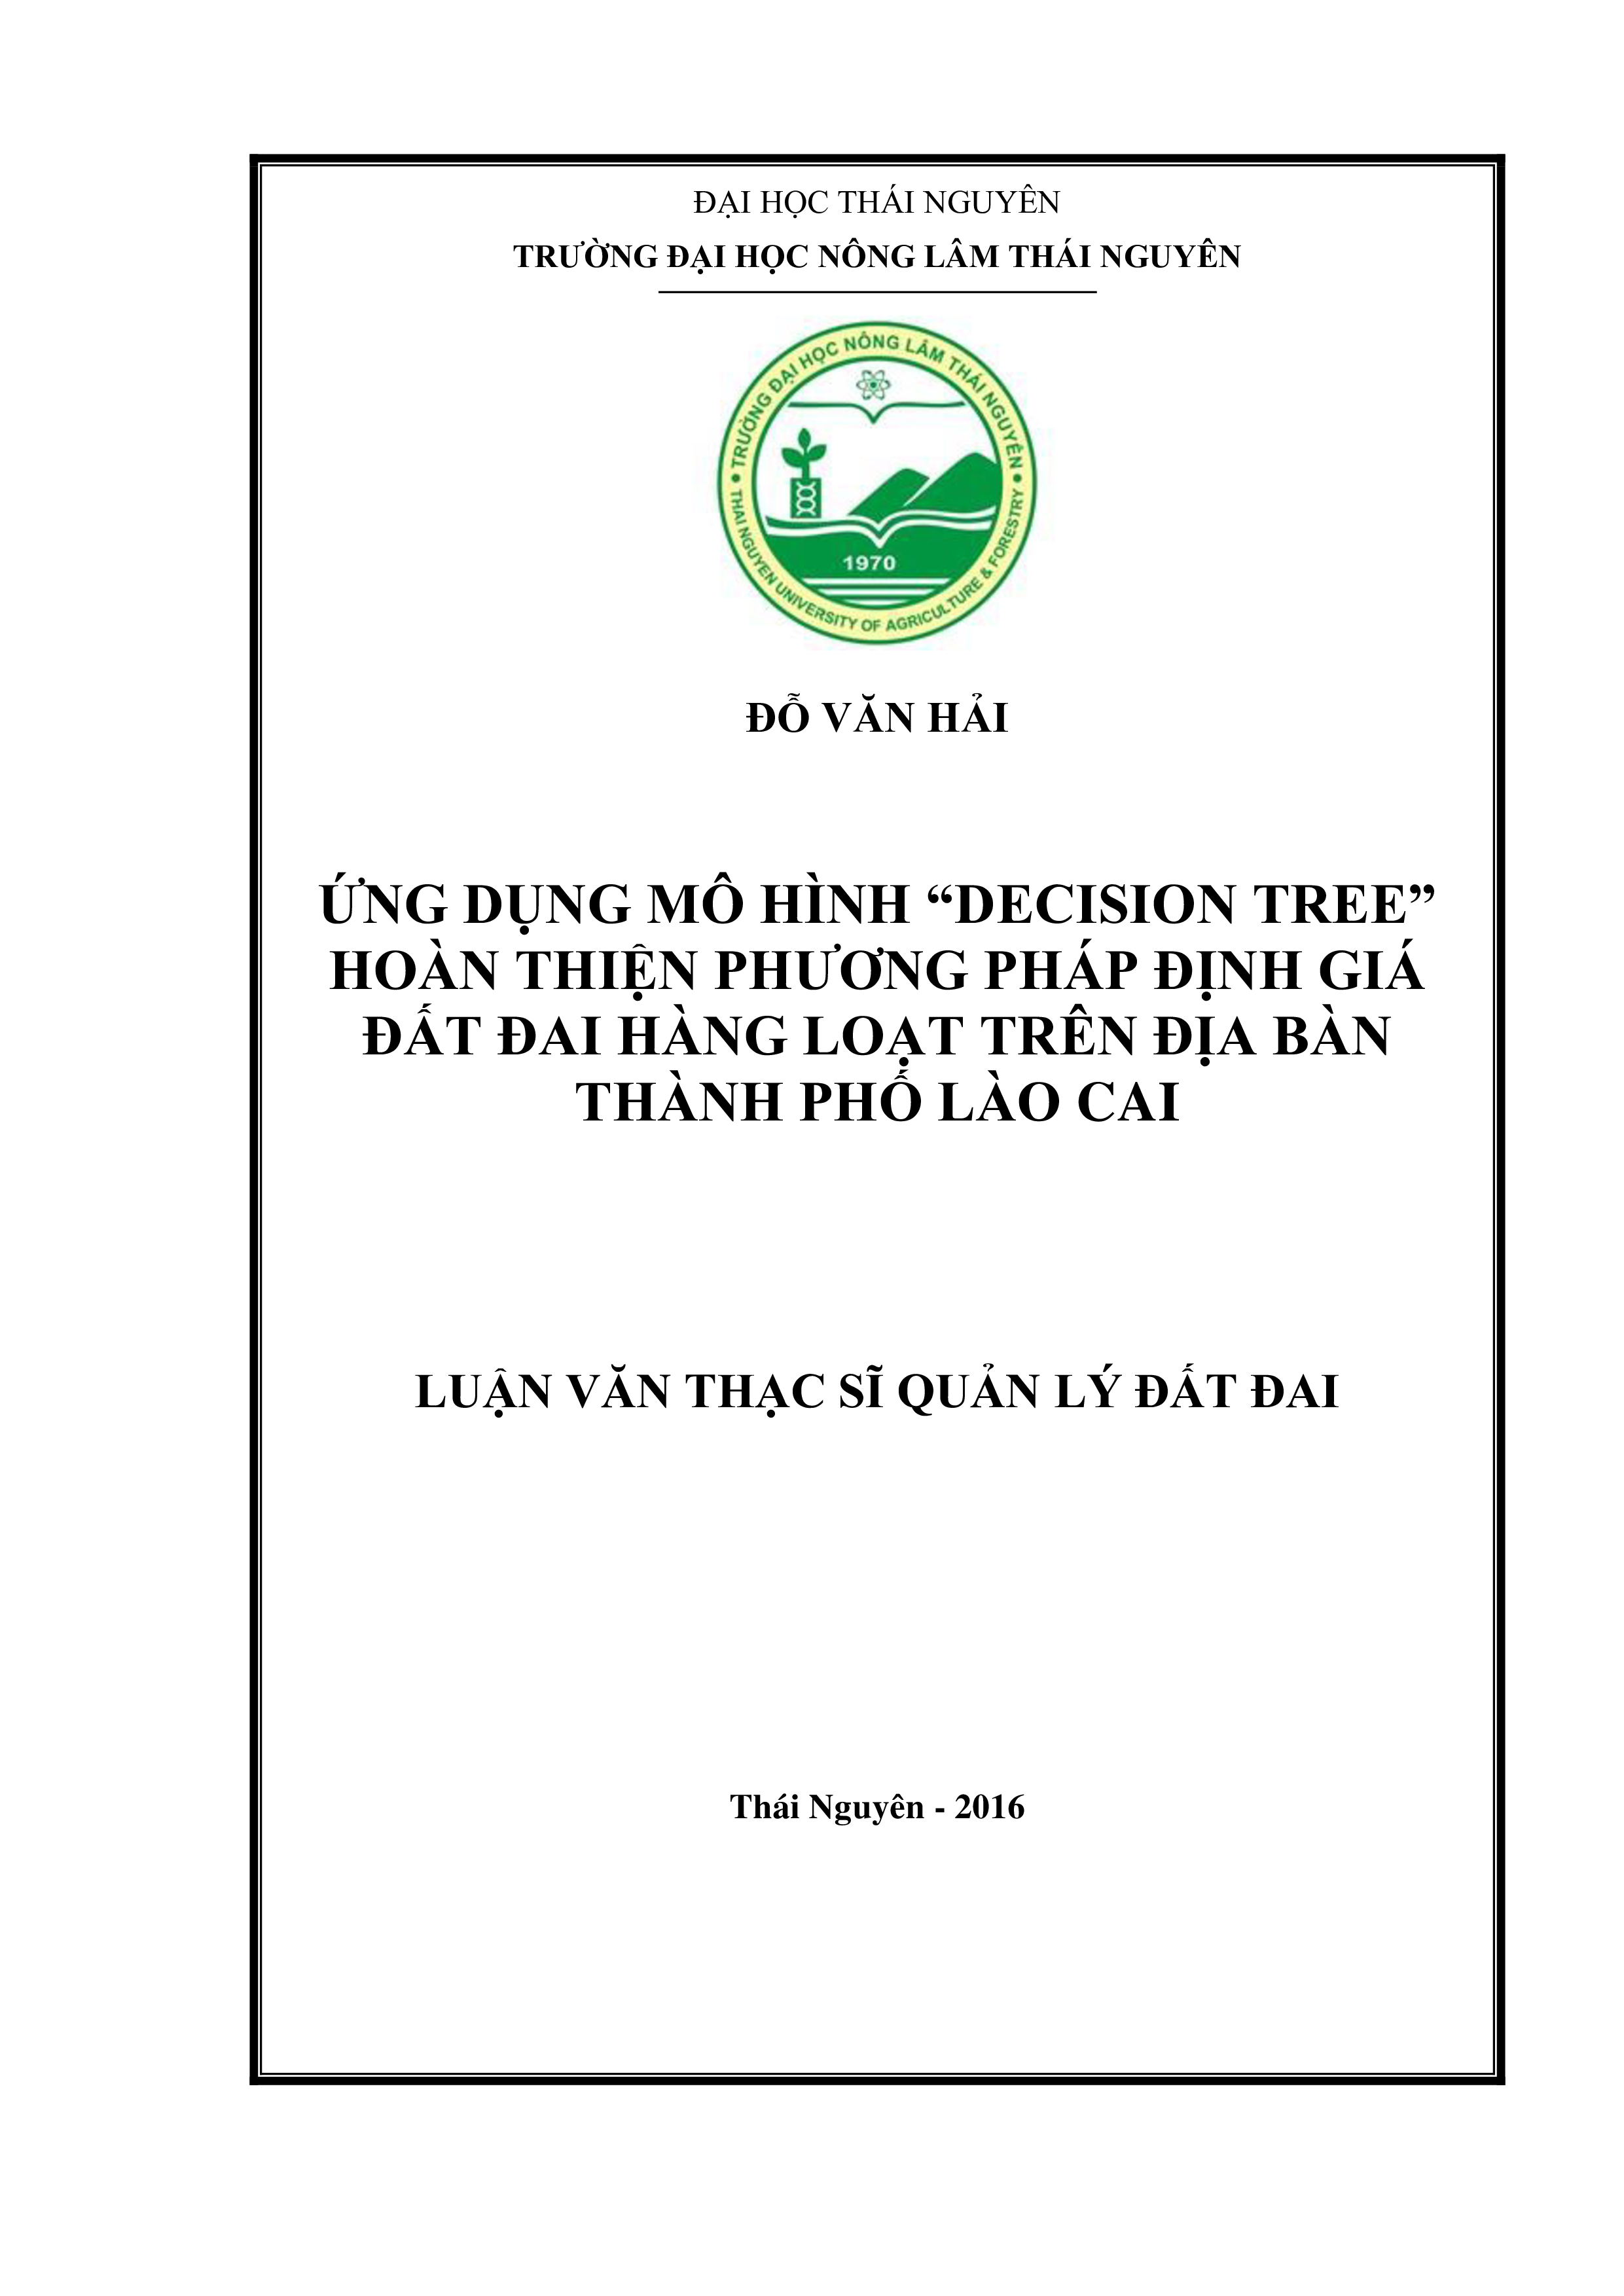 Ứng dụng  mô hình “Decision Tree”  hoàn thiện phương pháp định giá đất đai hàng loạt  trên địa bàn  thành phố  Lào Cai